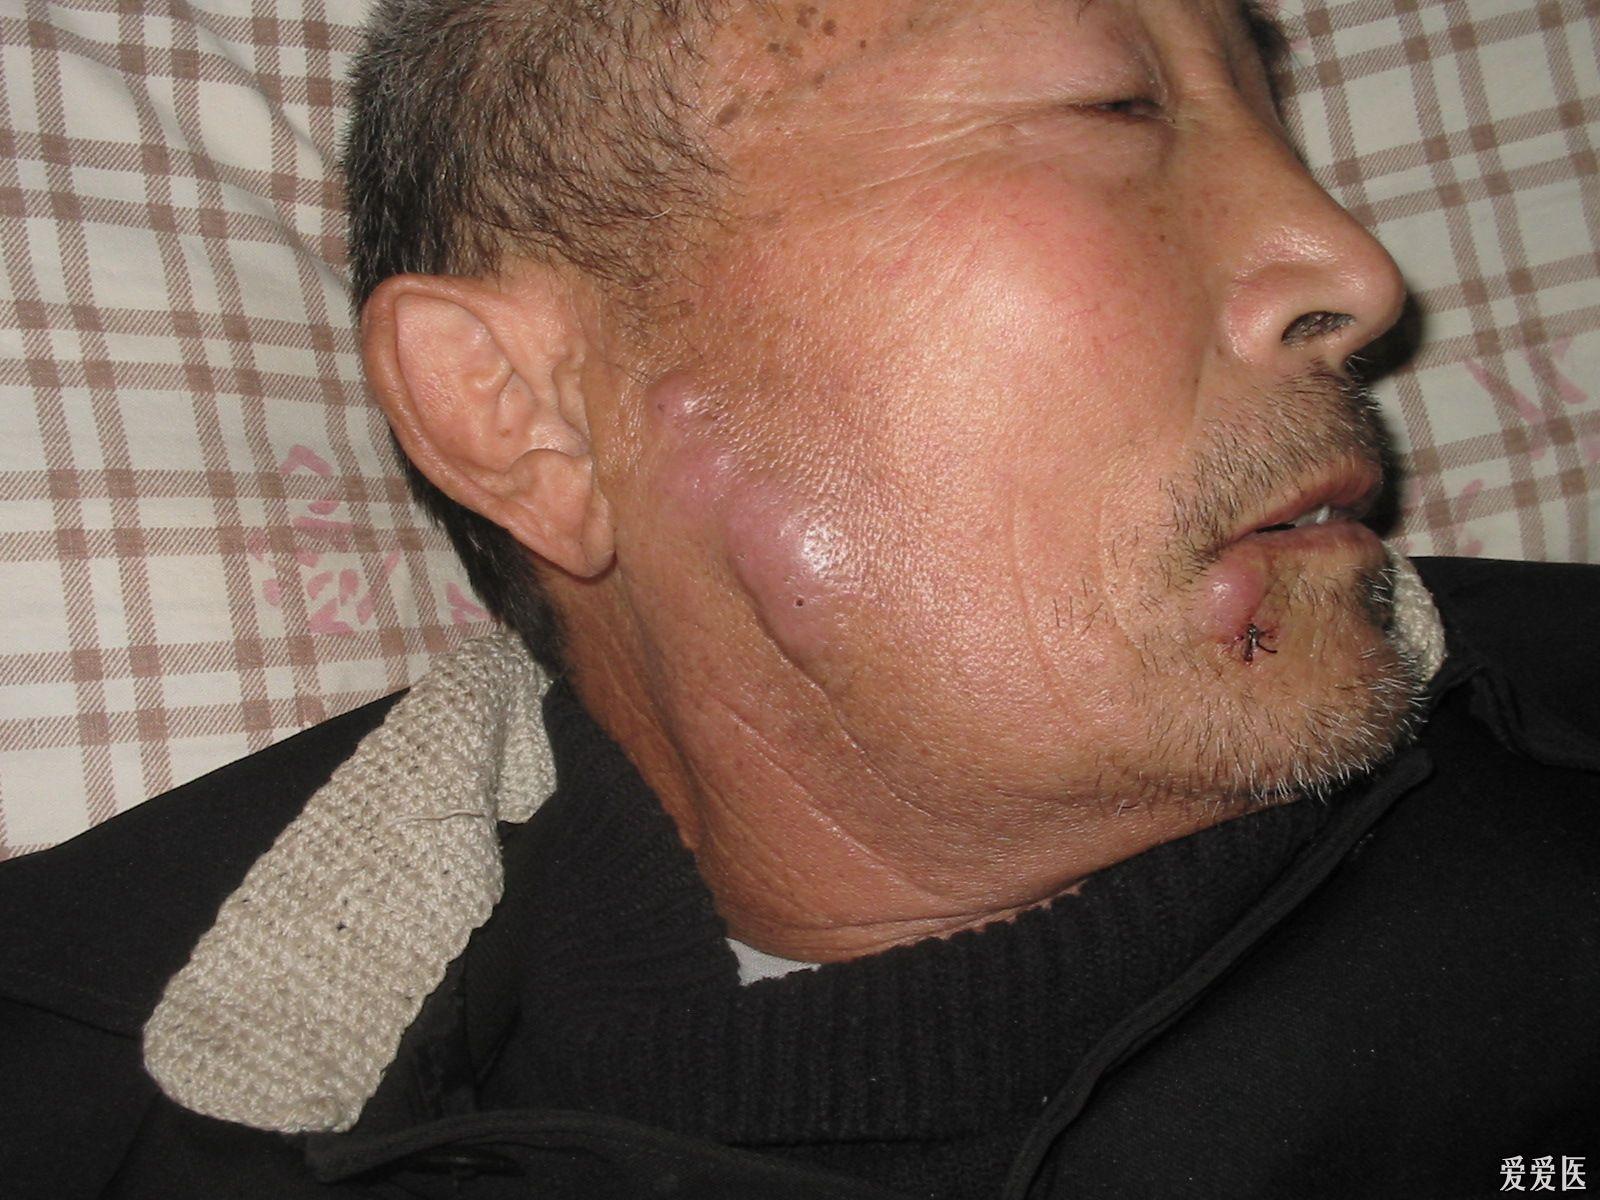 有面部丘疹斑块结节瘙痒2年余伴周身丘疹半年